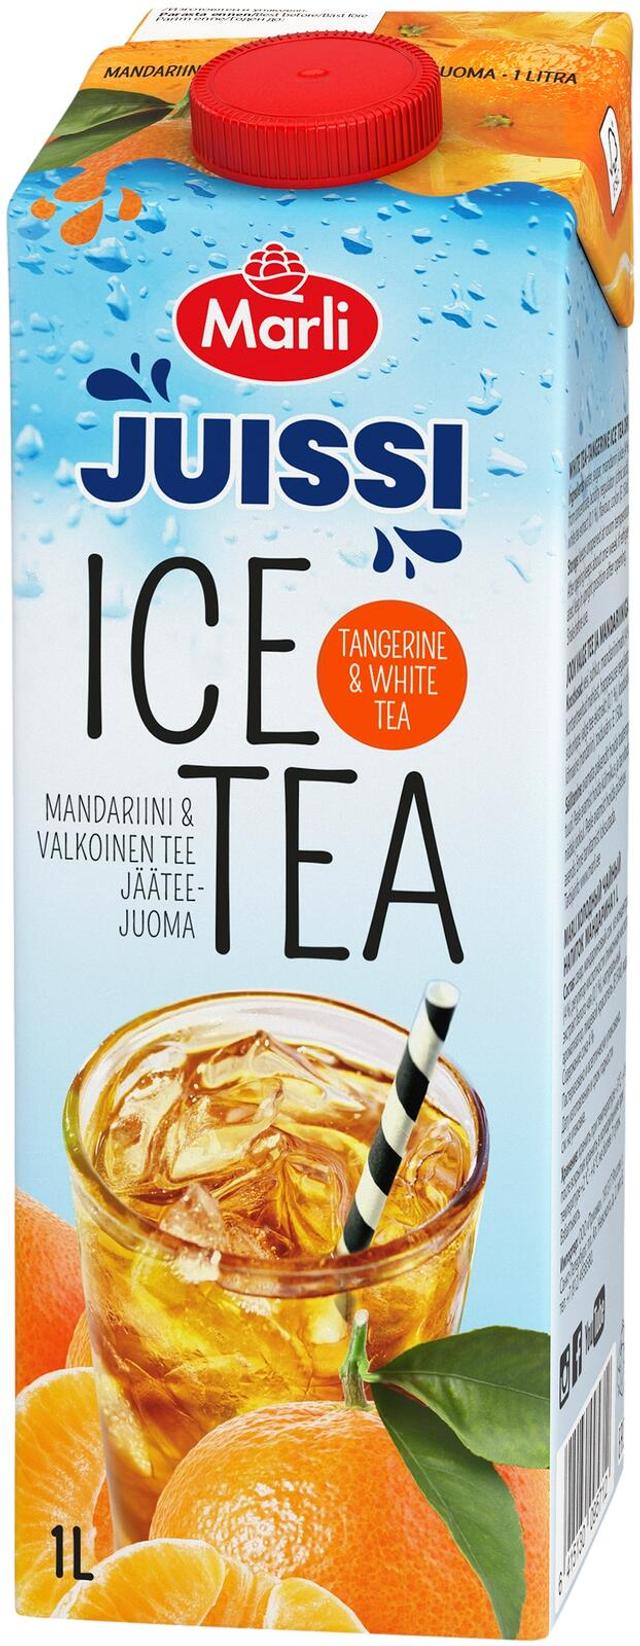 Marli Juissi Ice Tea Valkoinen tee-mandariinijääteejuoma 1 L